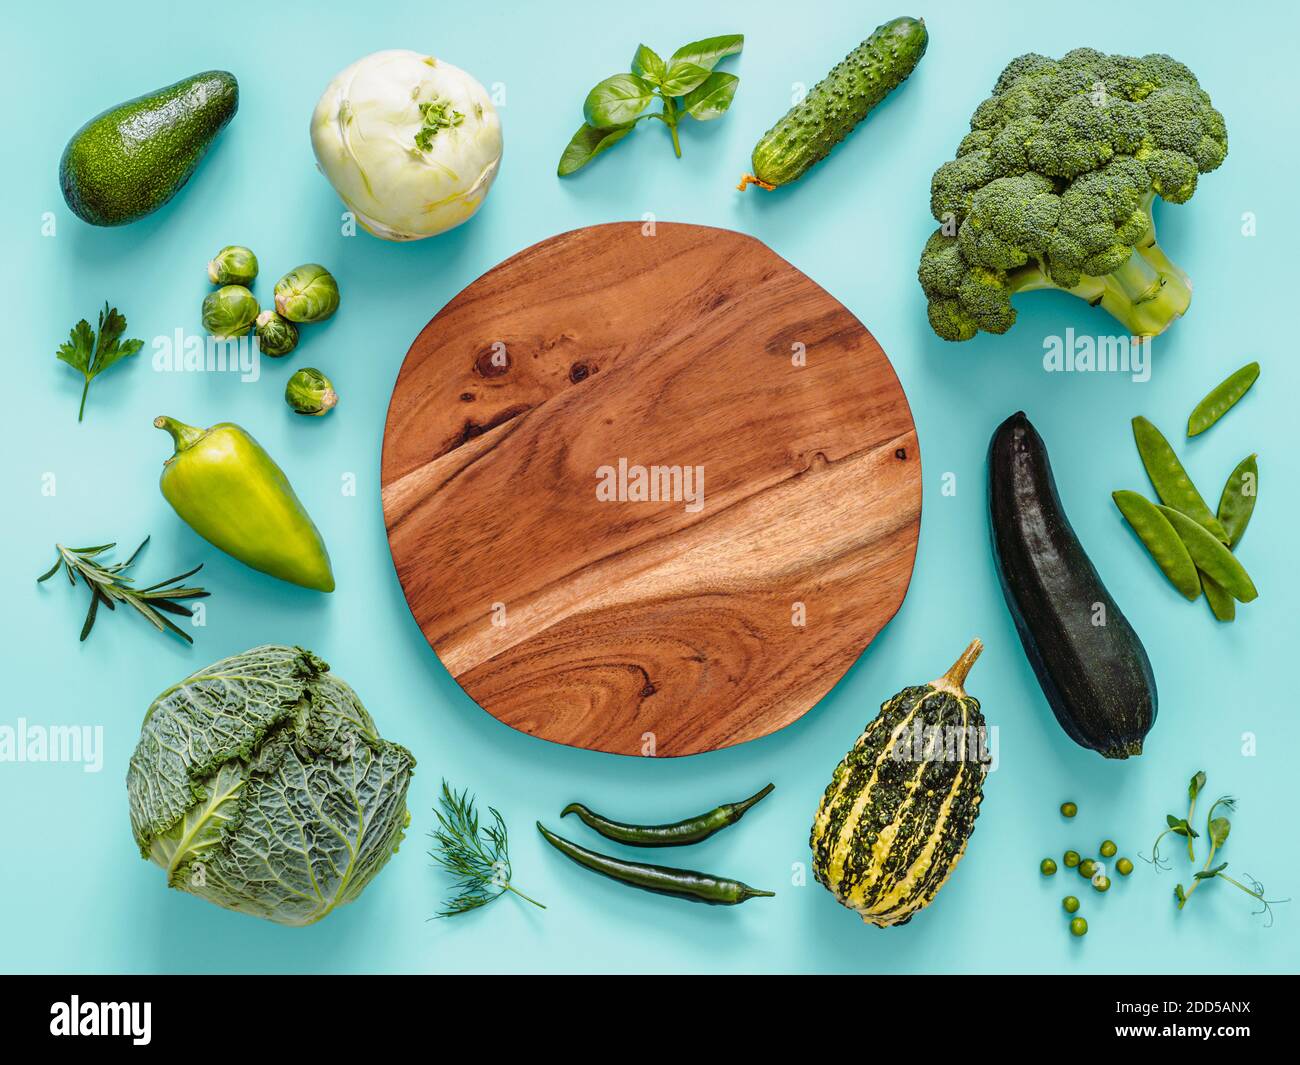 Flach legen mit grünem Gemüse auf blauem Hintergrund, mit Kreis Holzschale in der Mitte. Grüne Erbsen, Zucchini, Avocado, Bohnenschote, Kürbis, Brokkoli, rosenkohl, Rosmarin, Microgreens. Speicherplatz kopieren Stockfoto